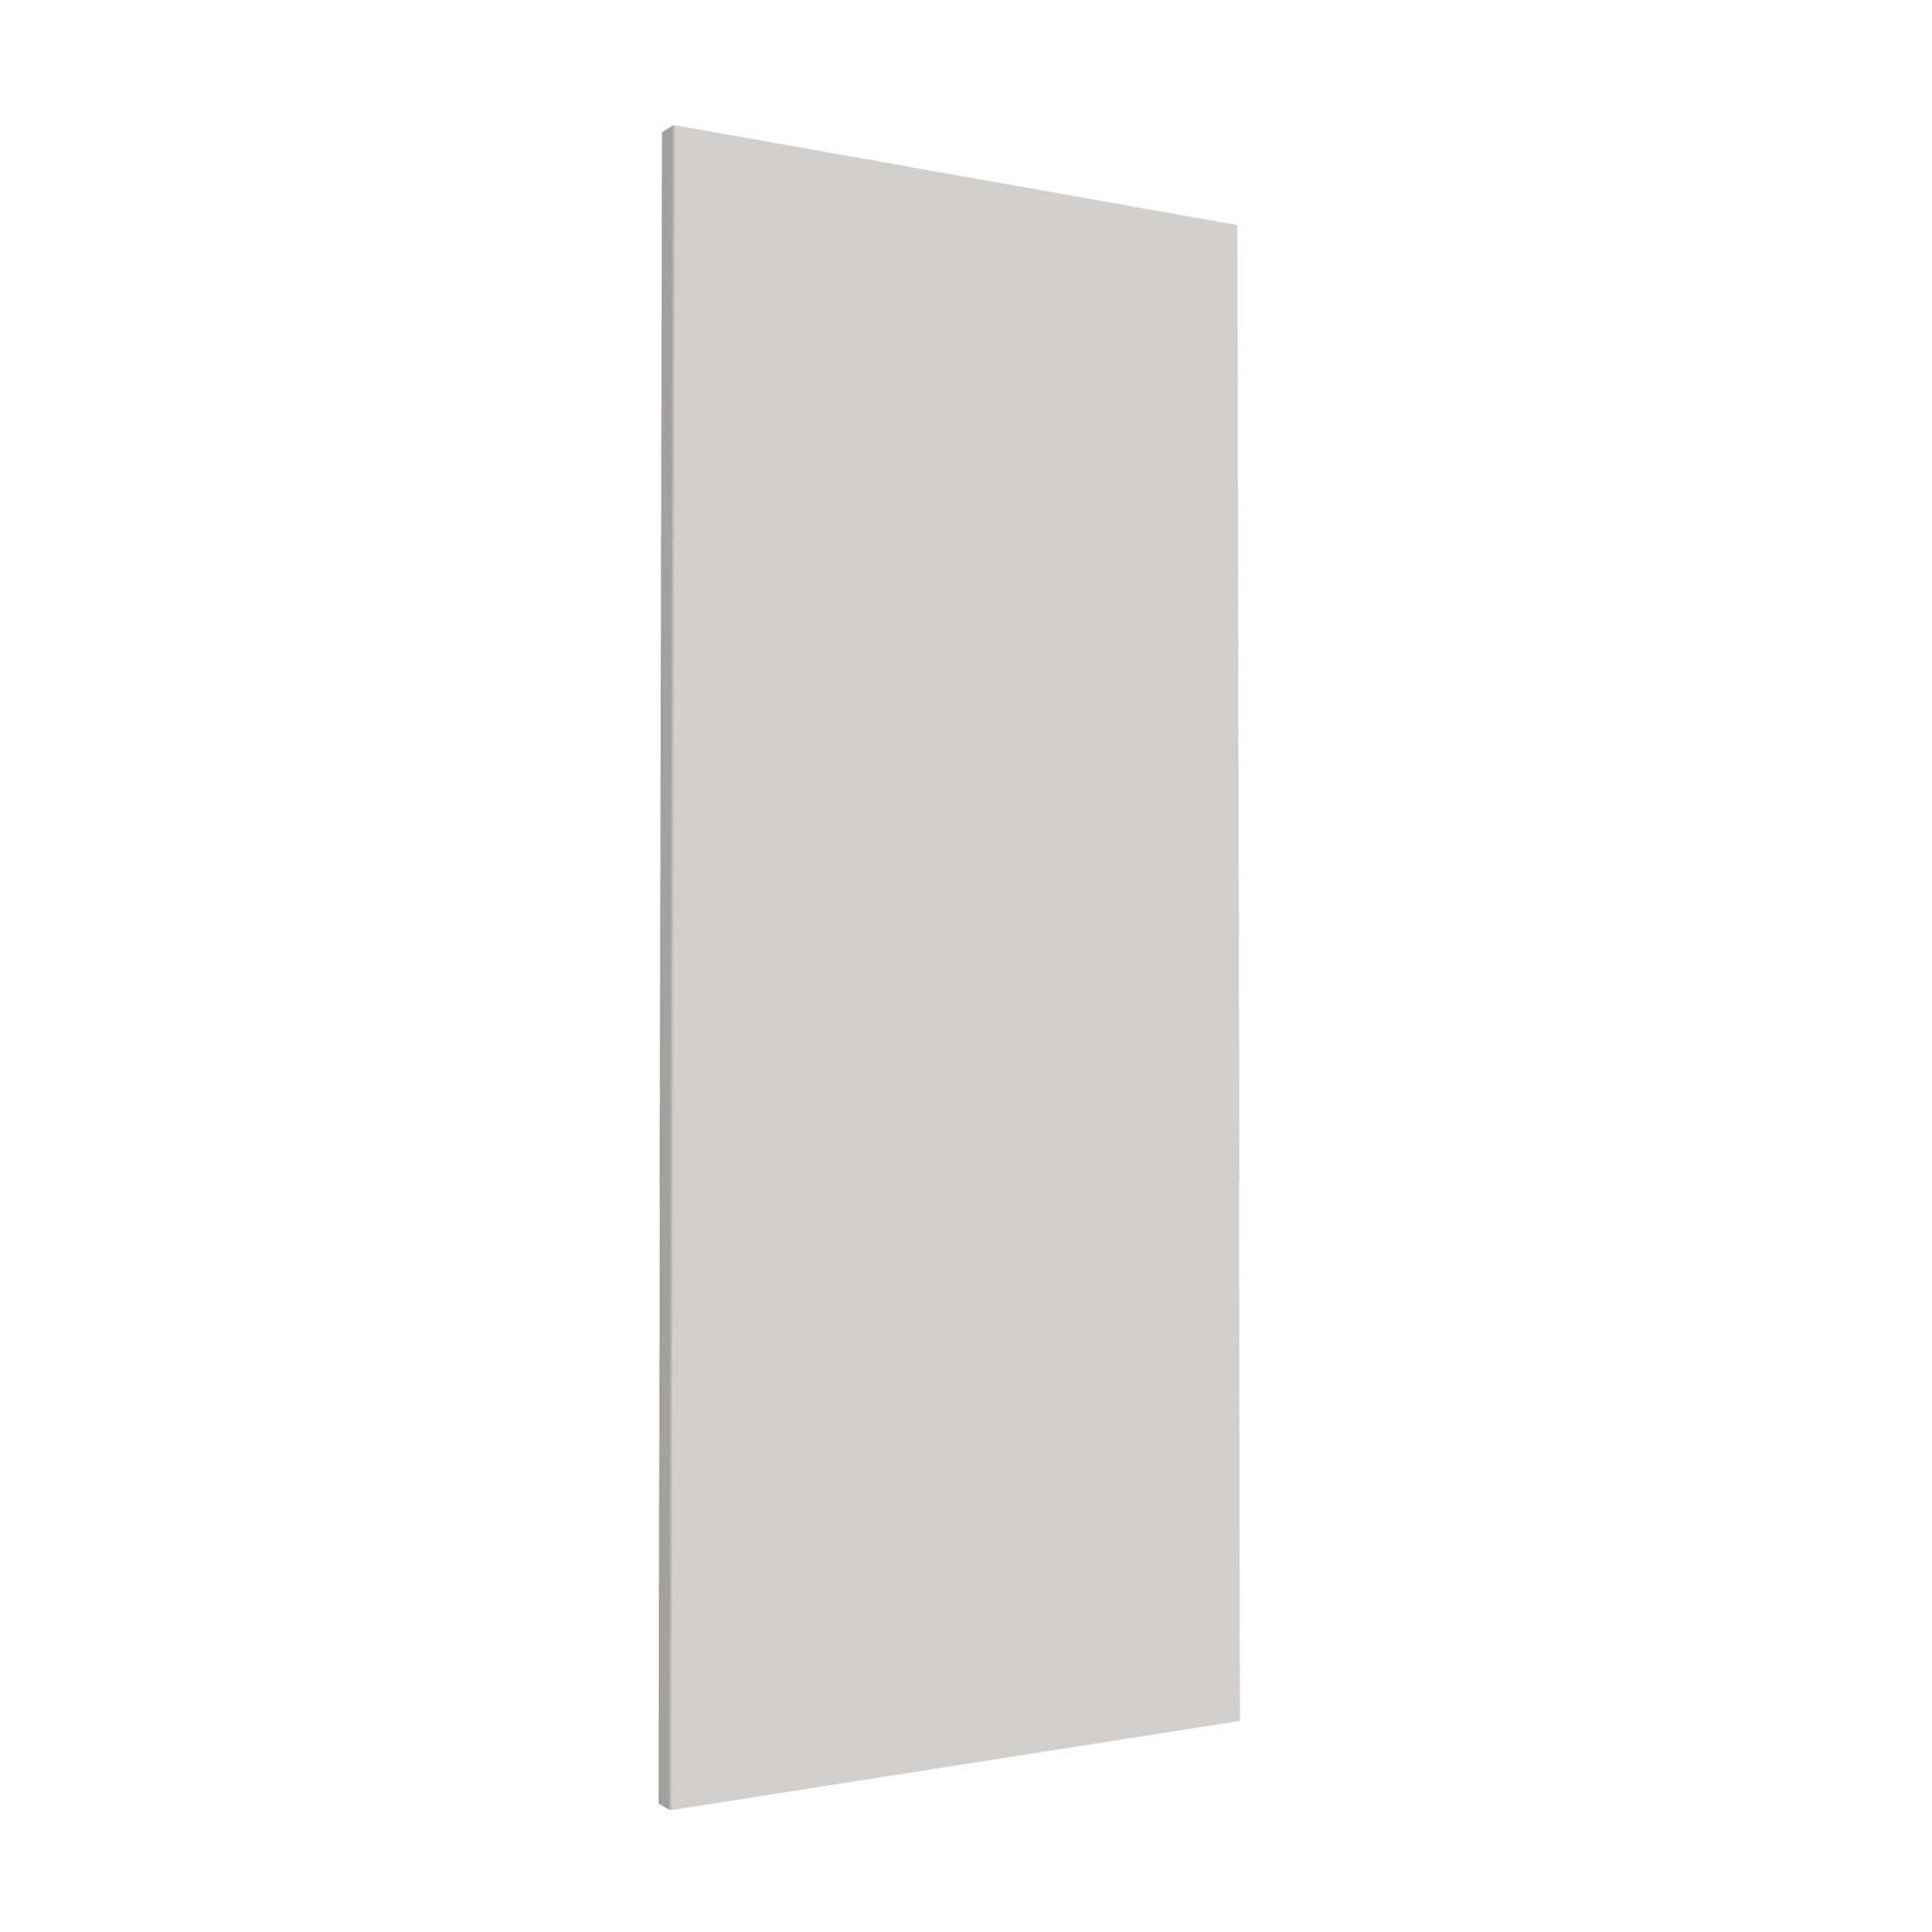 Form Darwin Matt grey MDF Cabinet door (H)958mm (W)372mm